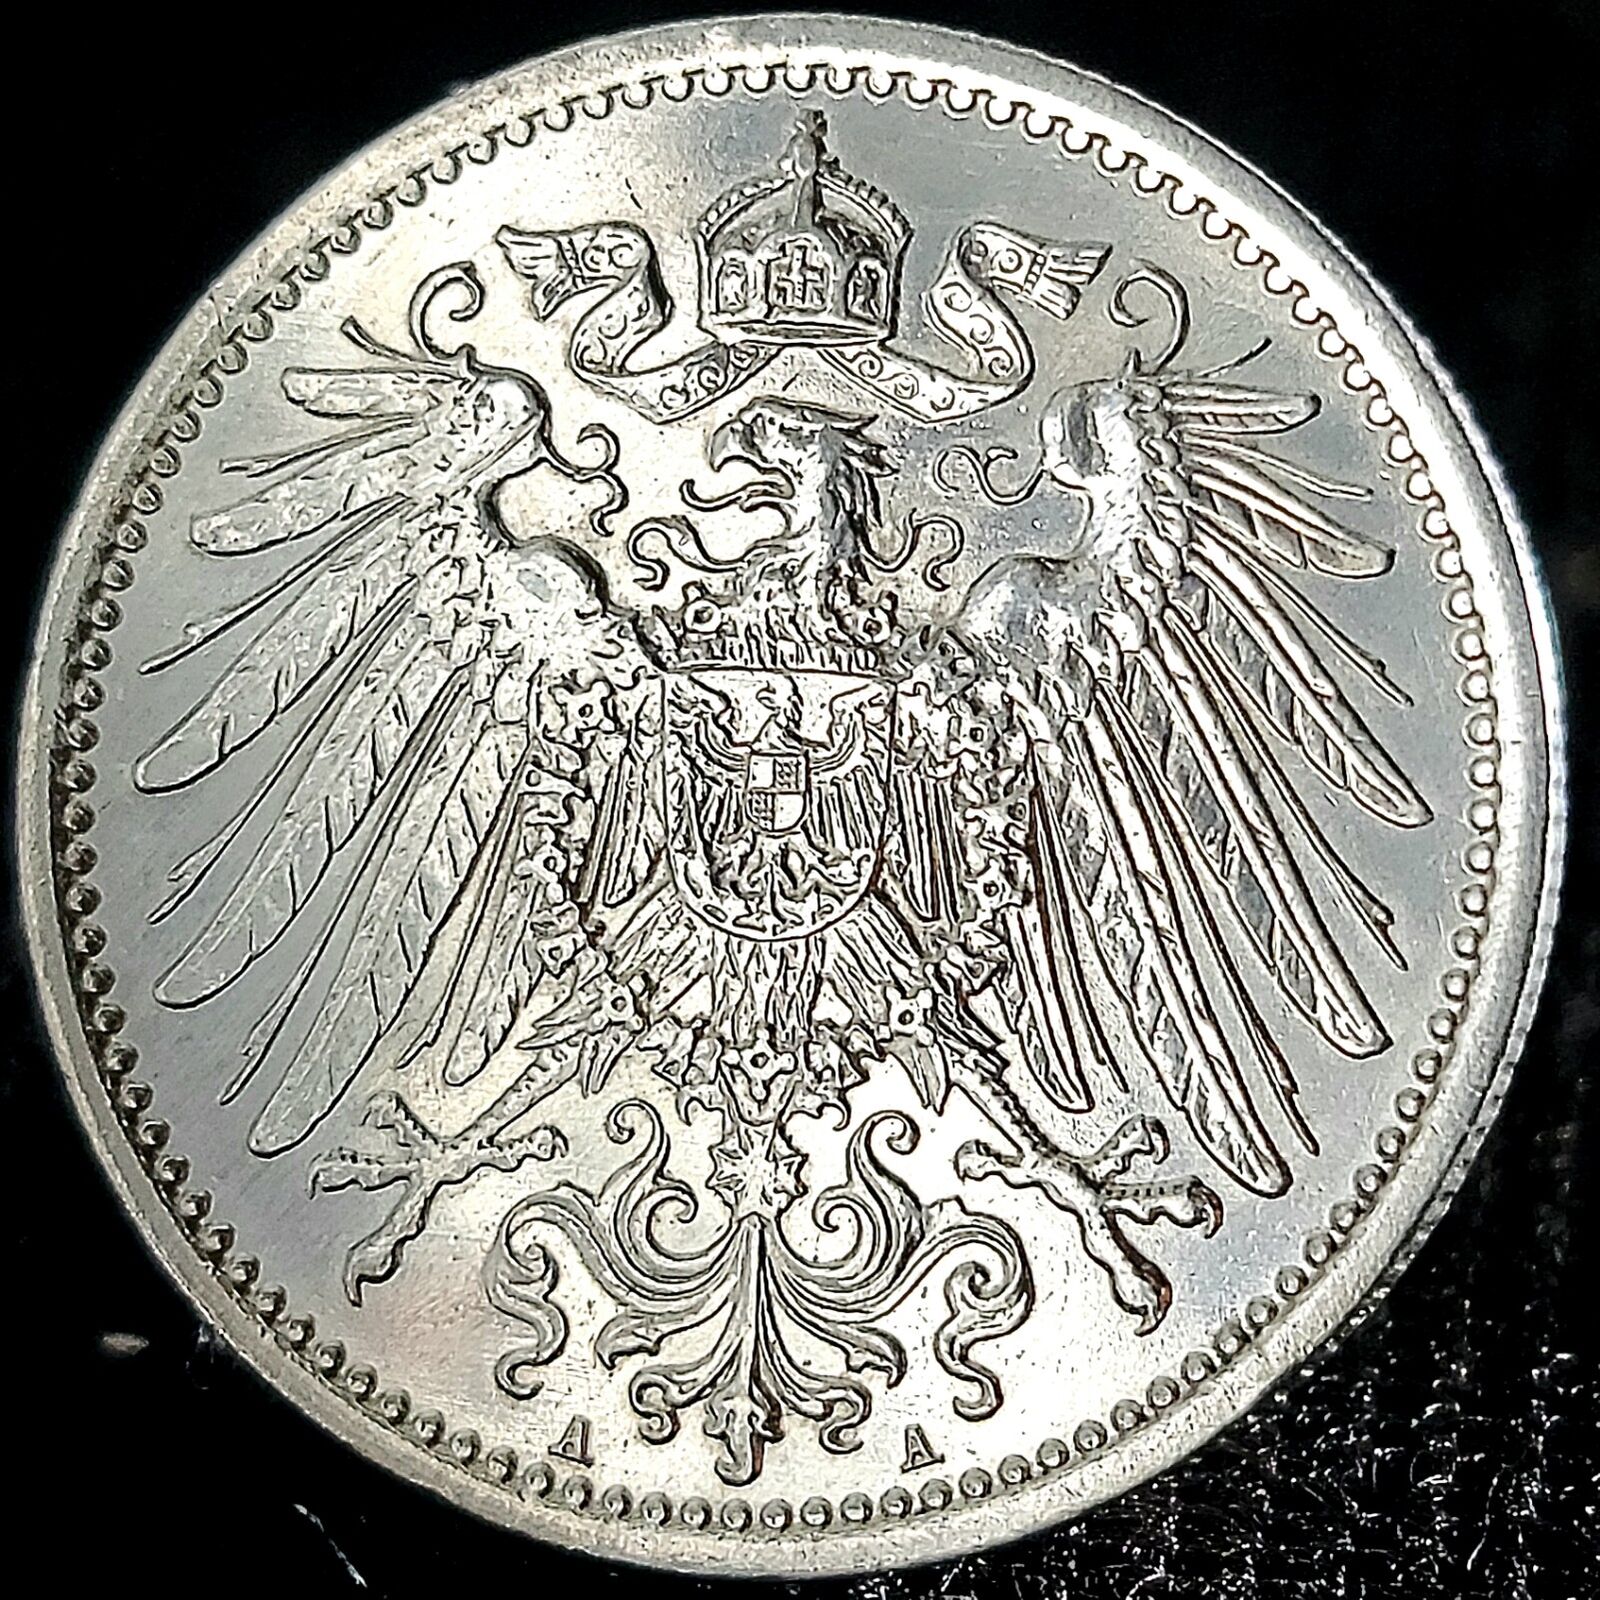 Deutsches Reich *Beautiful* Genuine 90% Silver Coin (.900) German Empire 1 Mark 